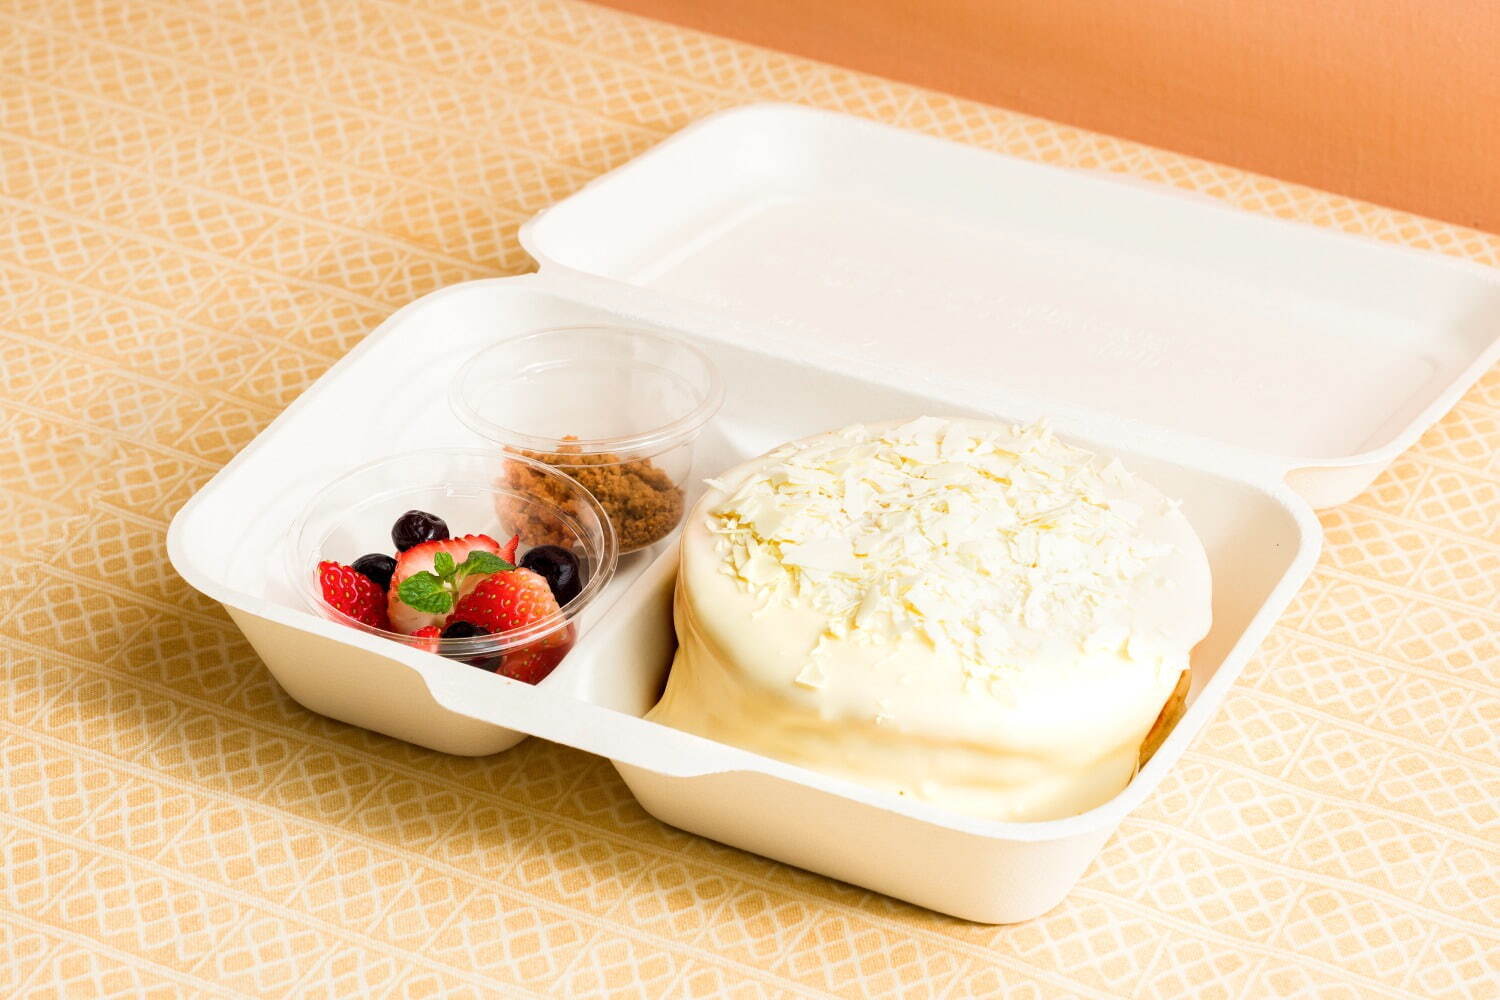 「ホワイトフォンダンショコラパンケーキ」テイクアウト 1,404円